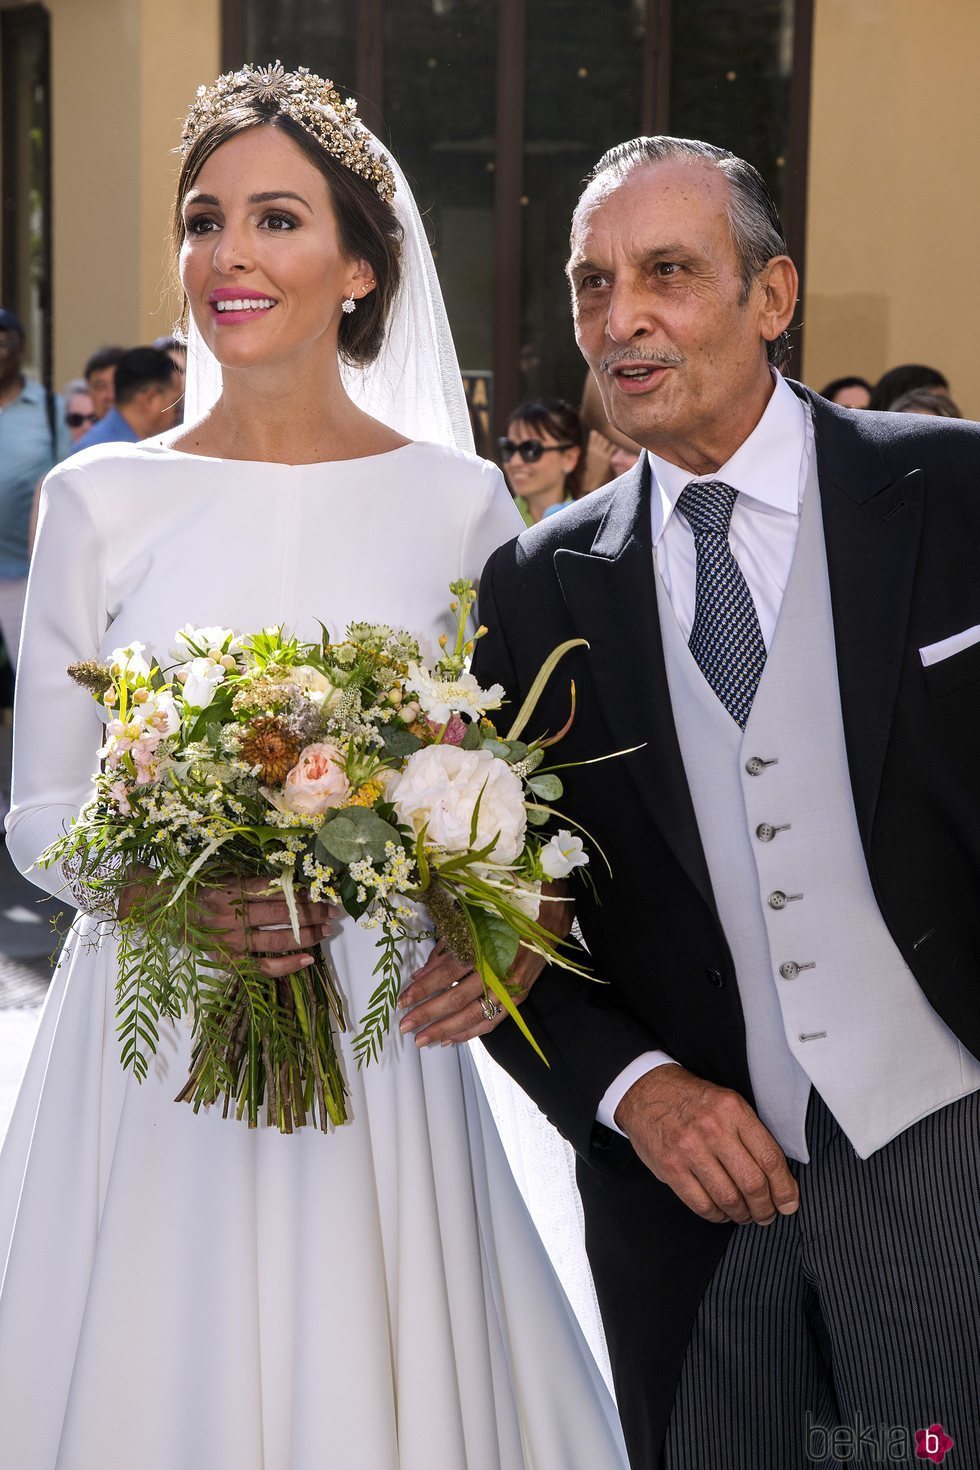 Rocío Osorno acompañada de su padre el día de su boda